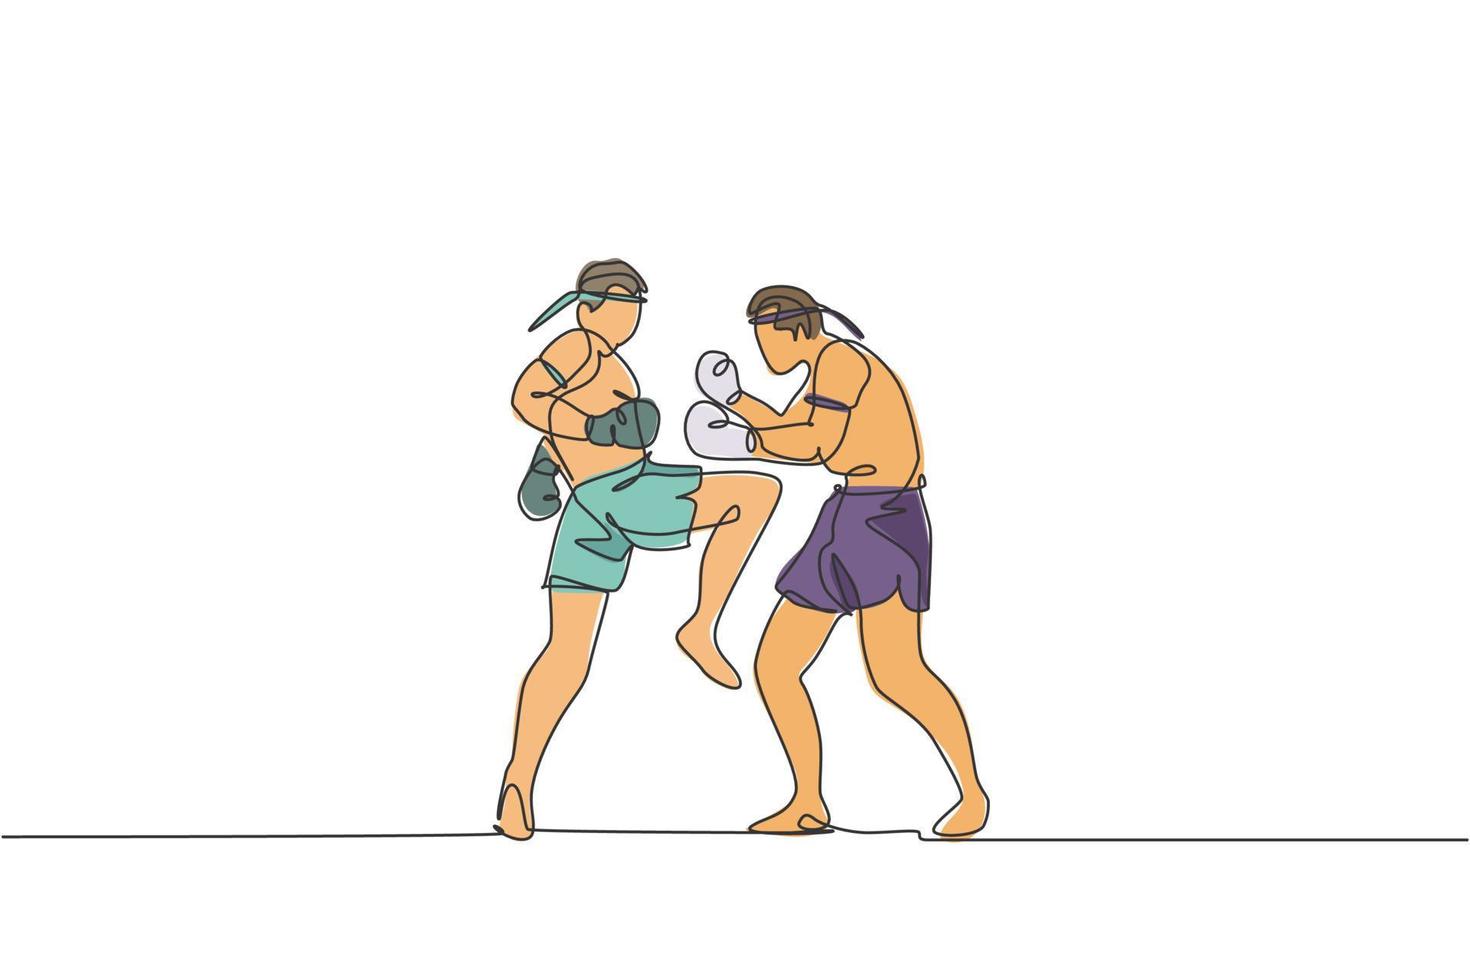 una línea continua dibujando a dos jóvenes boxeadores muay thai deportivos preparándose para pelear en el campo de boxeo. concepto de juego de deporte de lucha. Ilustración de vector gráfico de diseño de dibujo de línea única dinámica